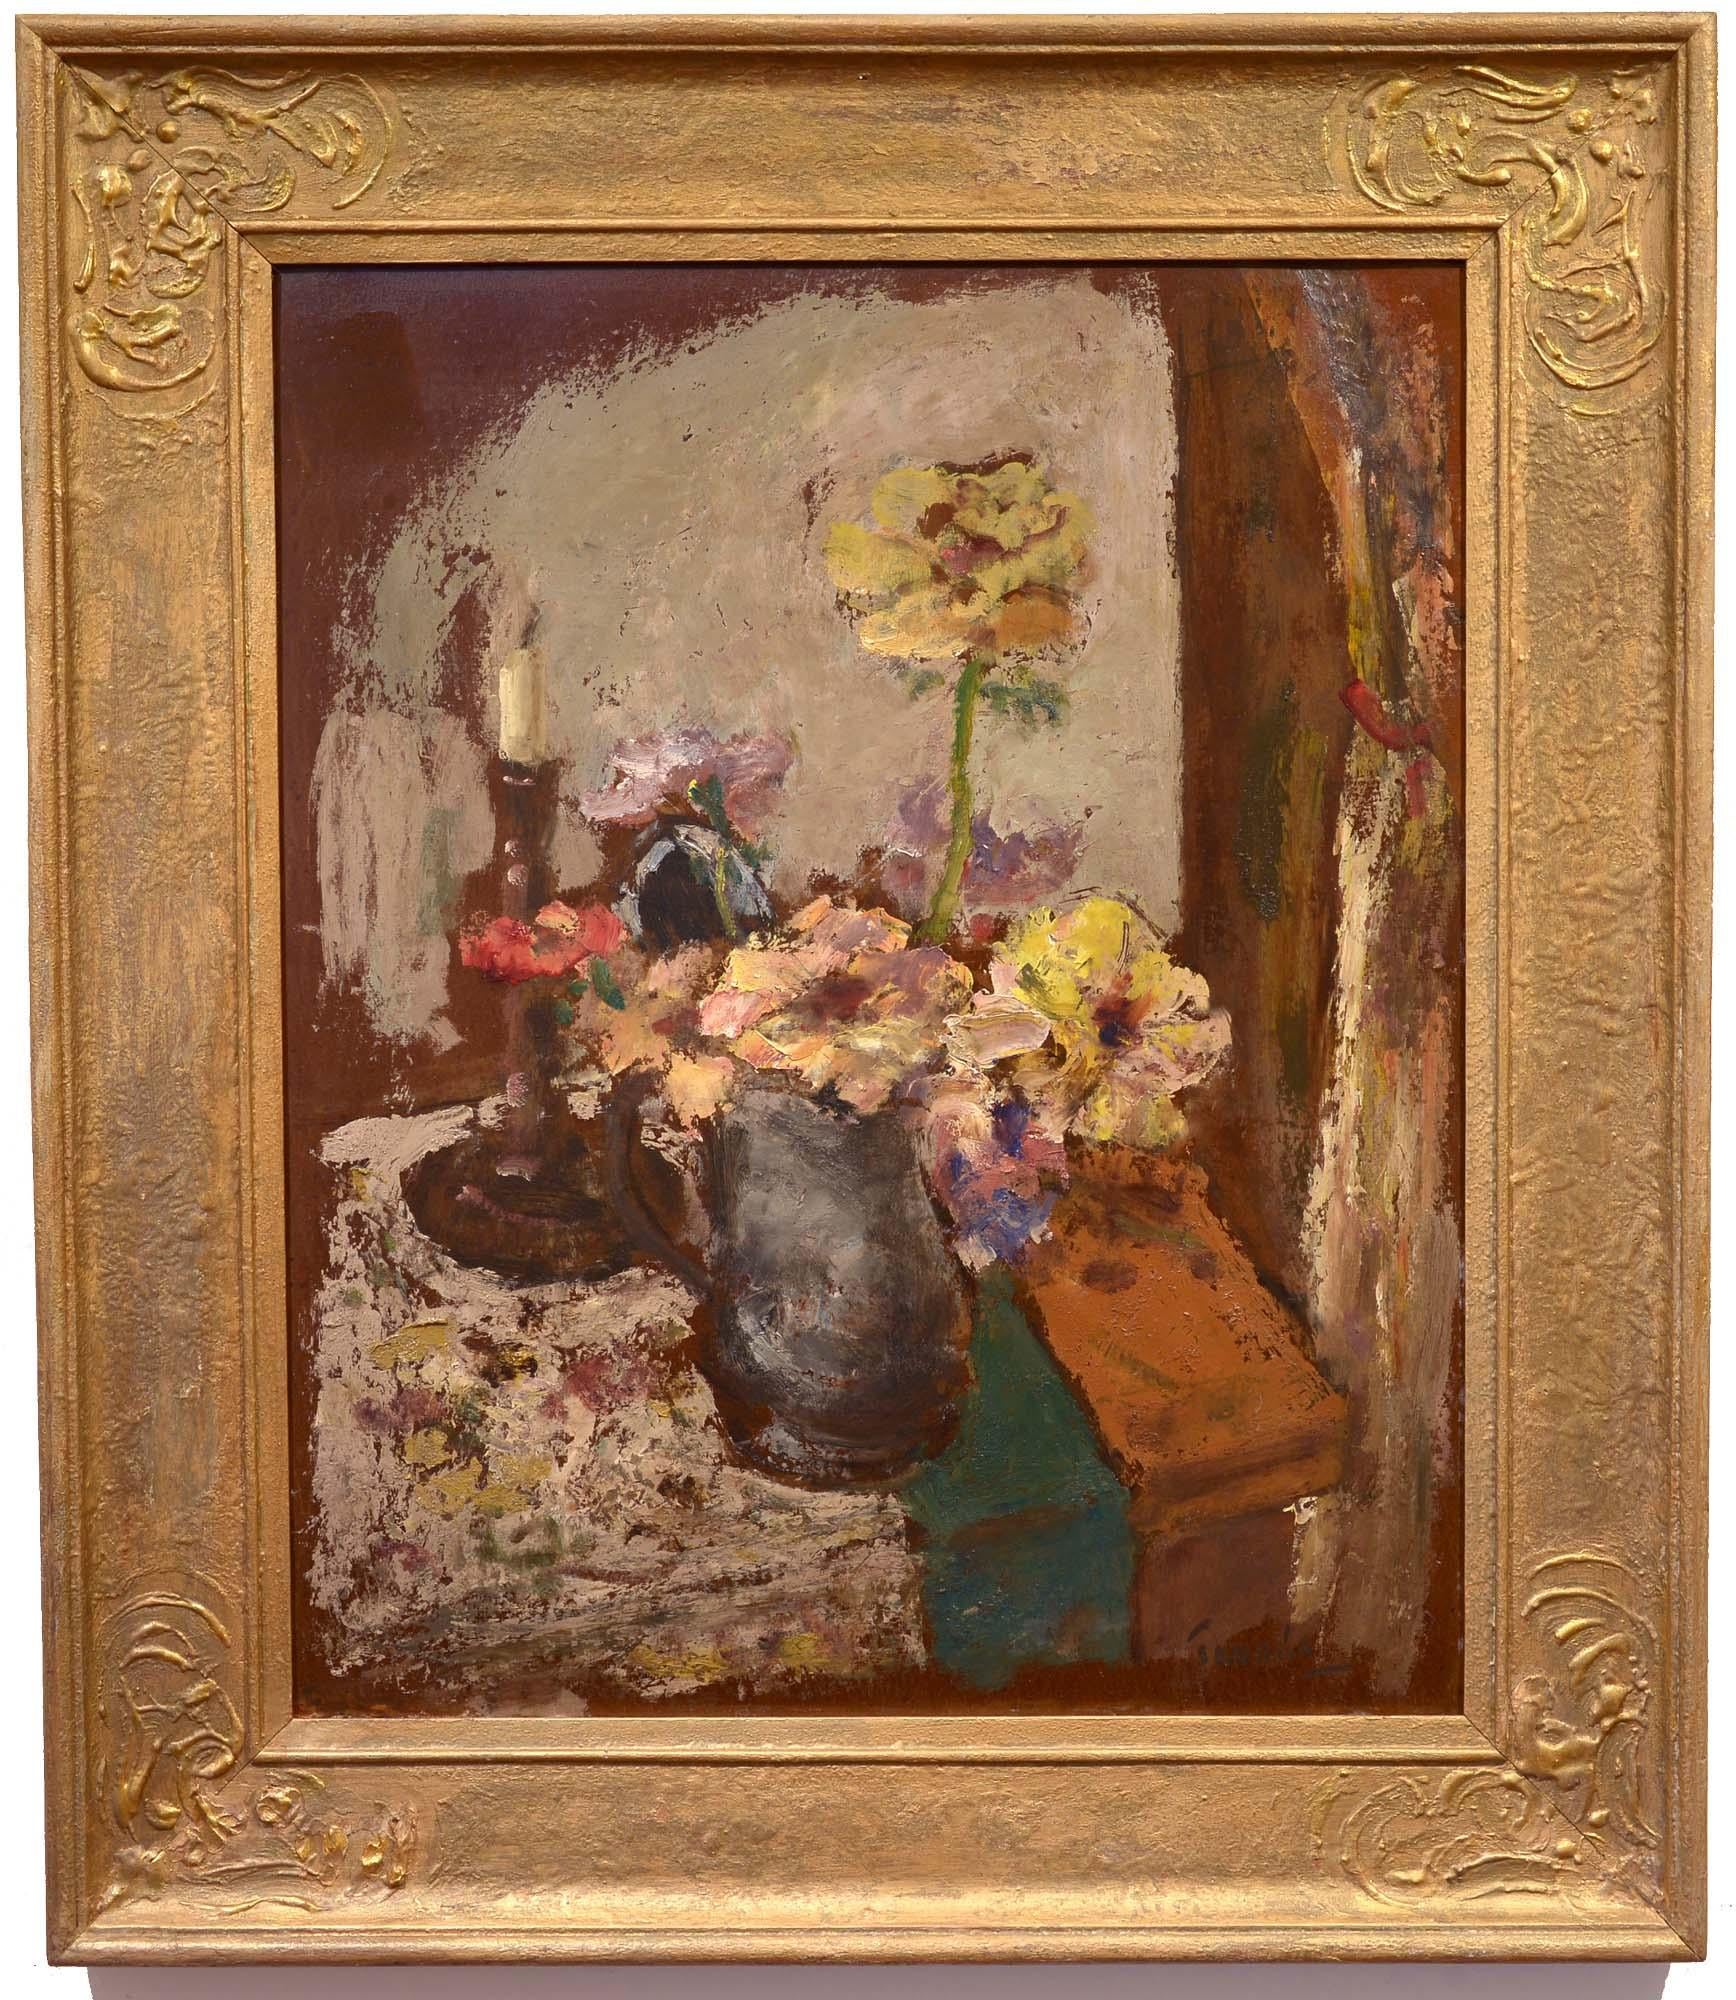 Tisch-Stillleben, Japanisch, 20. Jahrhundert, Impressionismus, Öl – Painting von Miematsu Tanabe